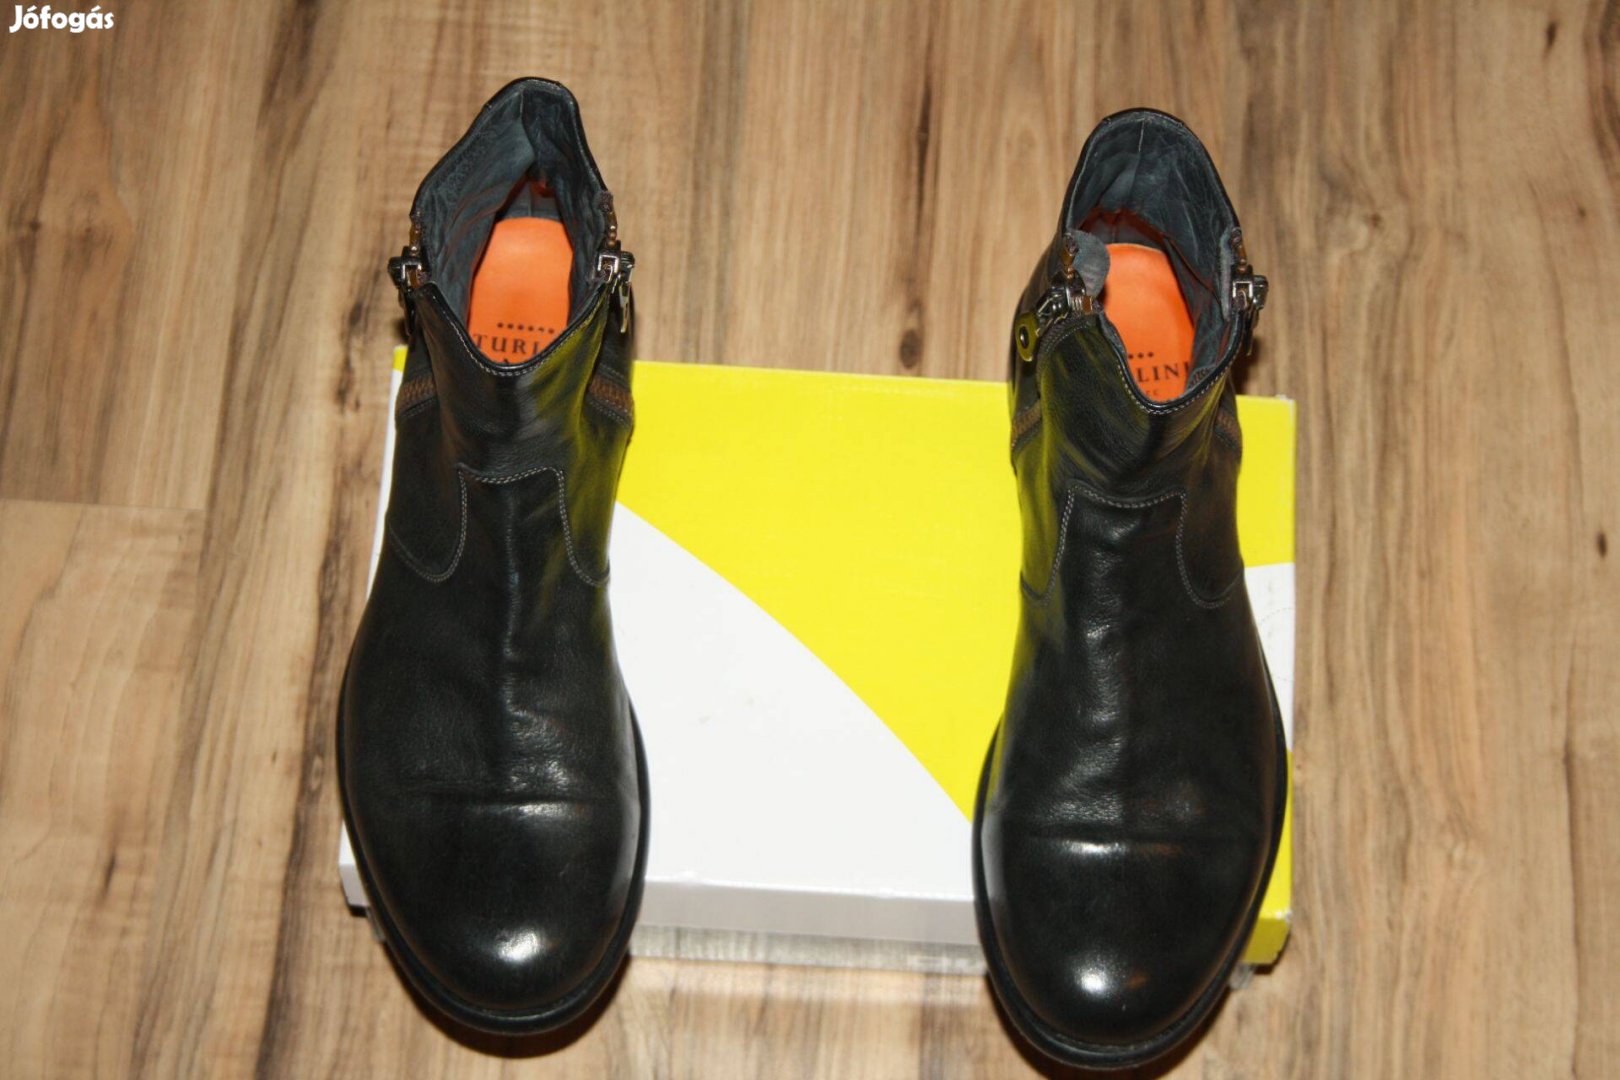 Sturlini férfi cipő 42es !elegáns eredeti bőr cipő! made in Italy!